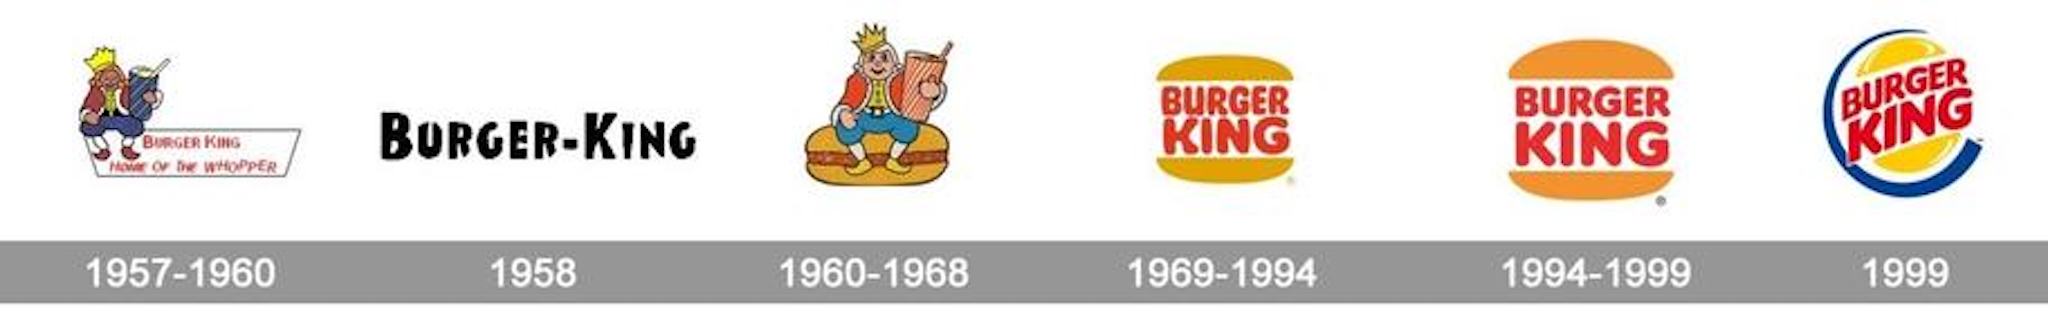 Burger-King-logo.jpg